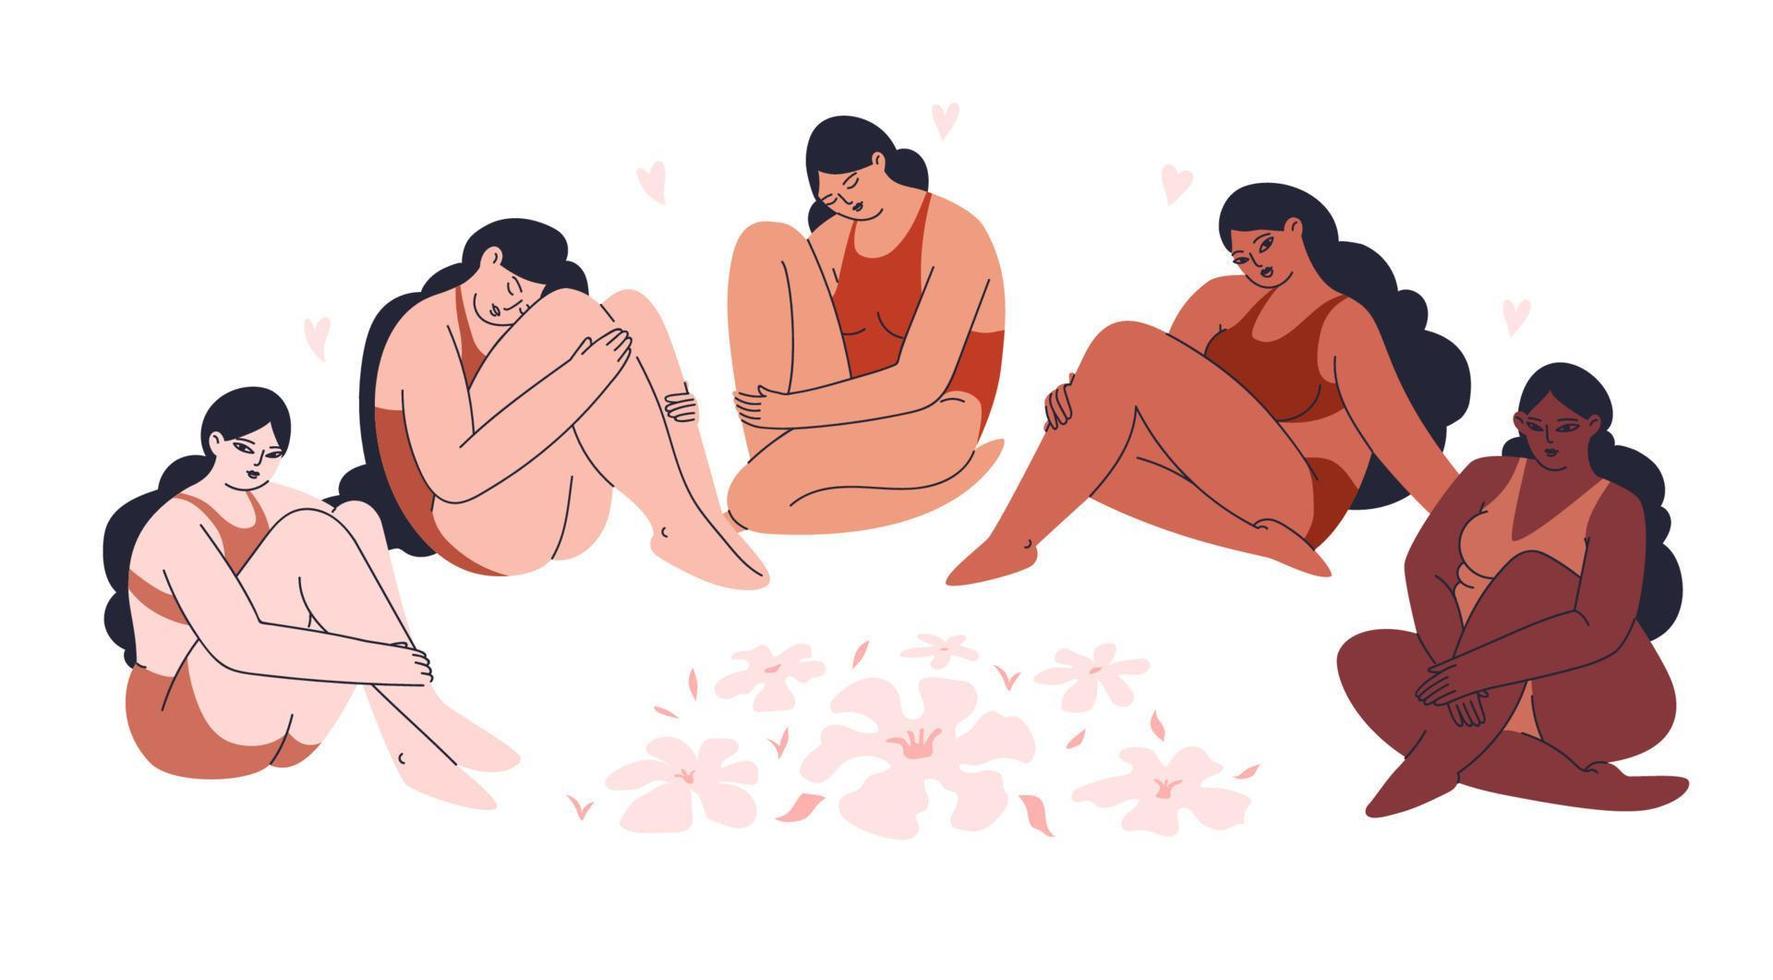 plus size multiculturele vrouwen in lingerie zitten in een kring tussen bloemen. diverse jonge meisjes van verschillende huidskleuren zijn samen. lichaam positief geïsoleerd. vector voorraad illustratie.